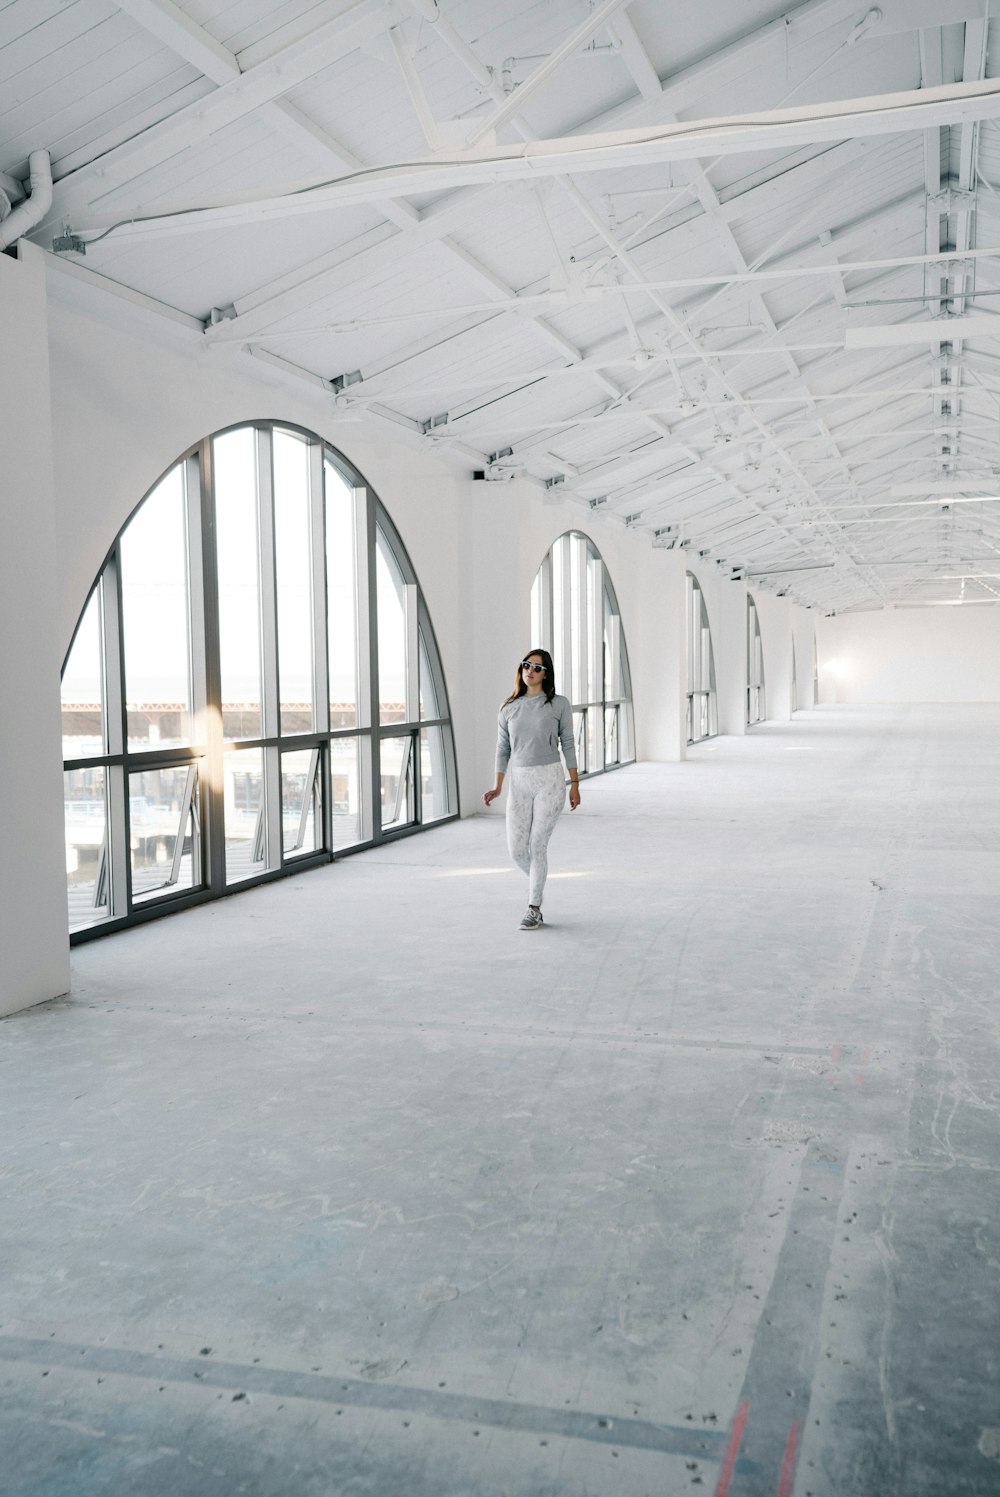 woman walking on empty pathway near glass arch window